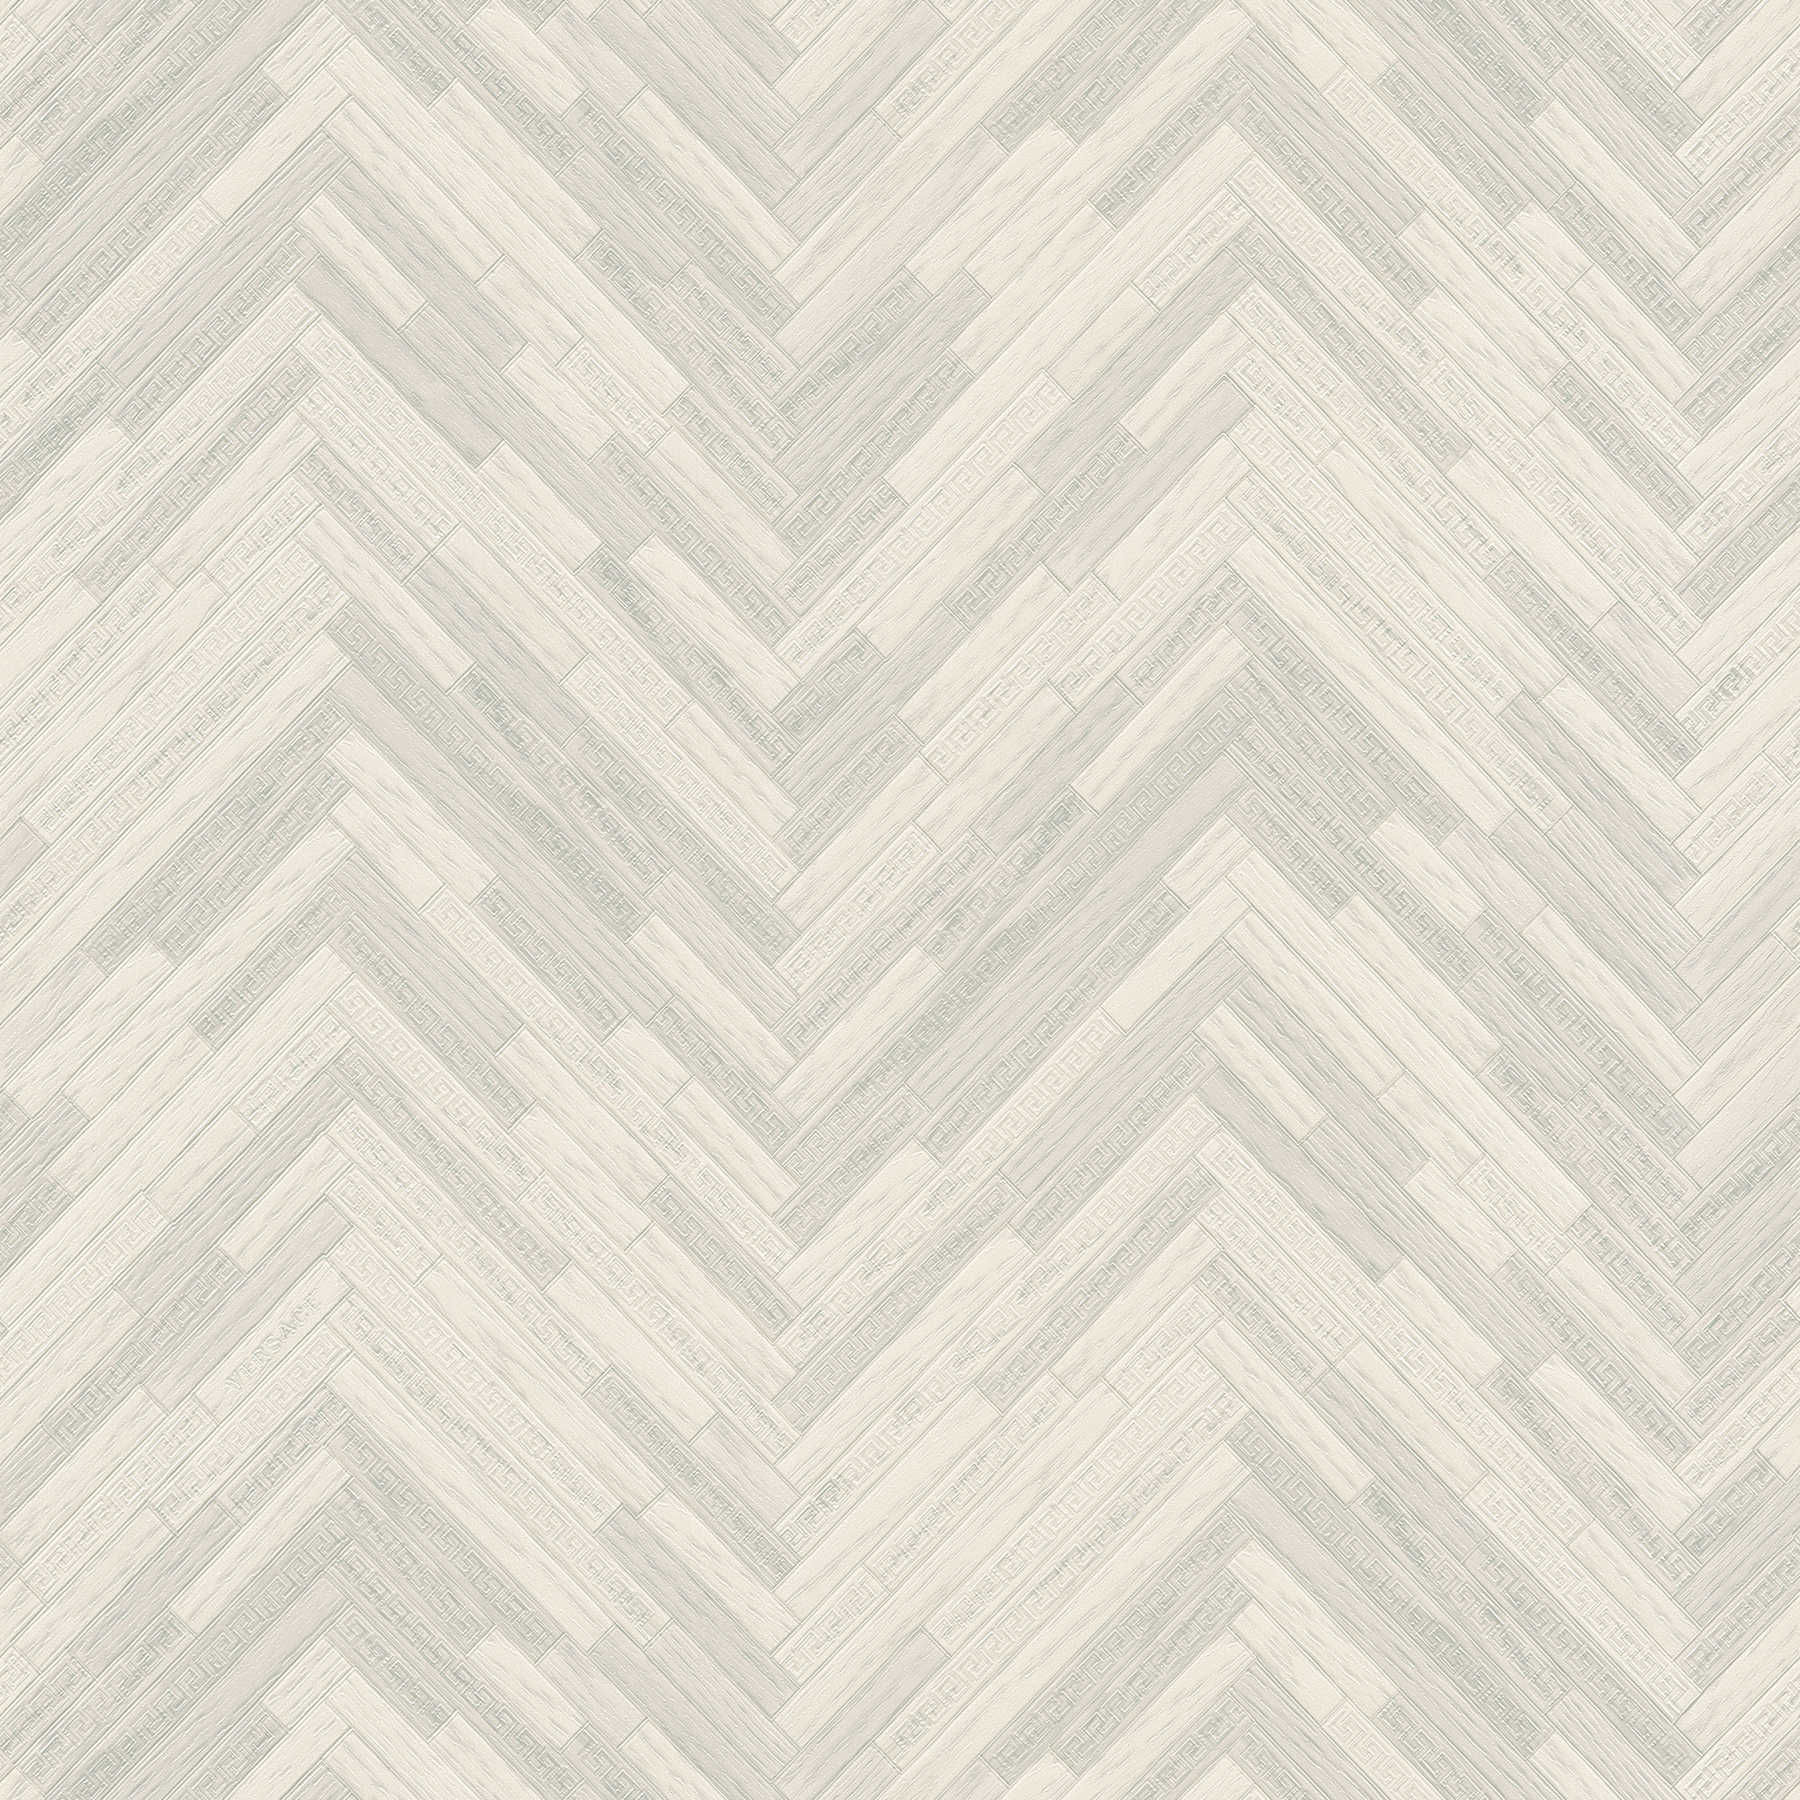 VERSACE Home Papier peint aspect bois élégant - gris, blanc
